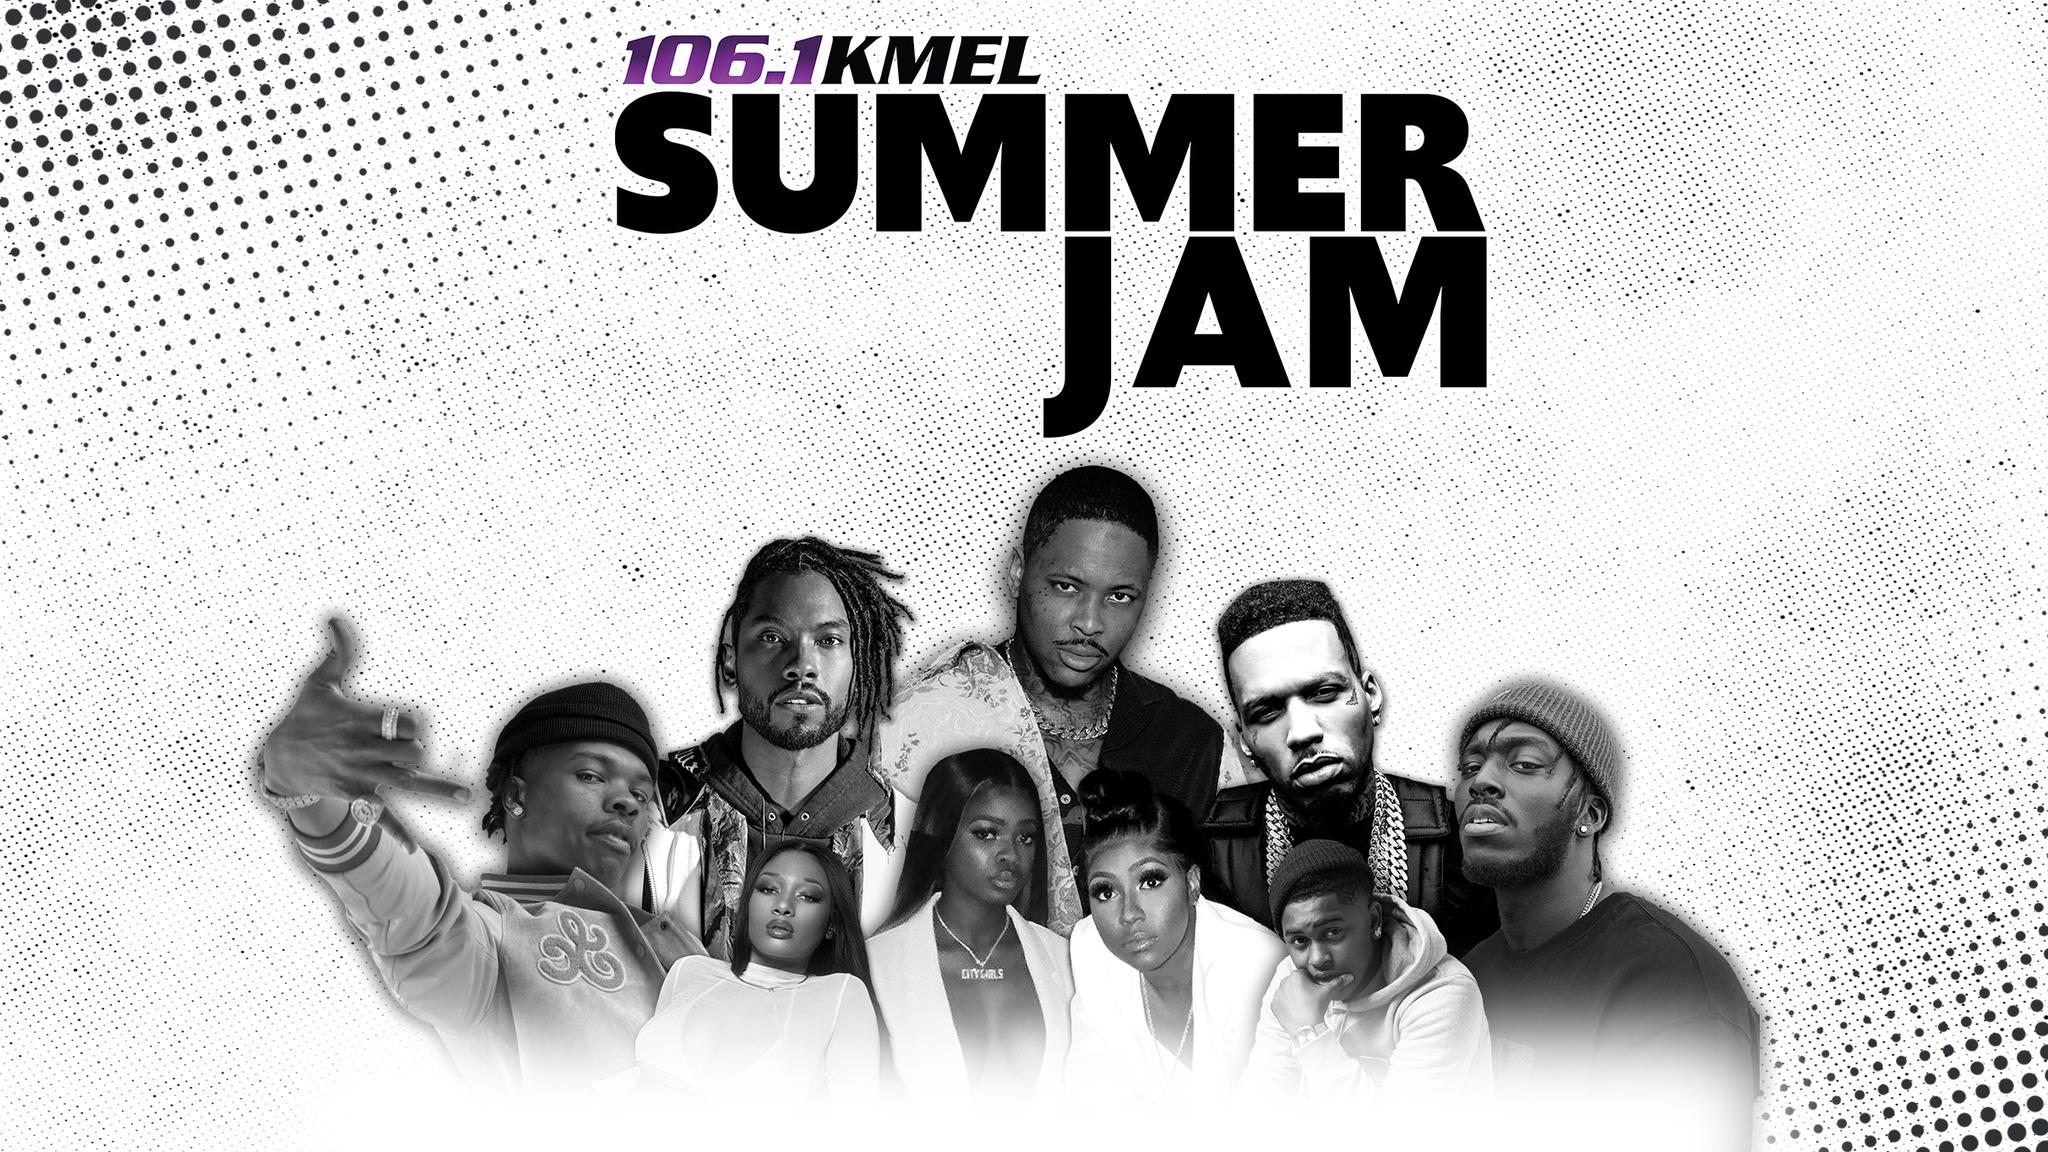 106.1 KMEL Summer Jam 2019 at Oracle Arena & Oakland Coliseum in San